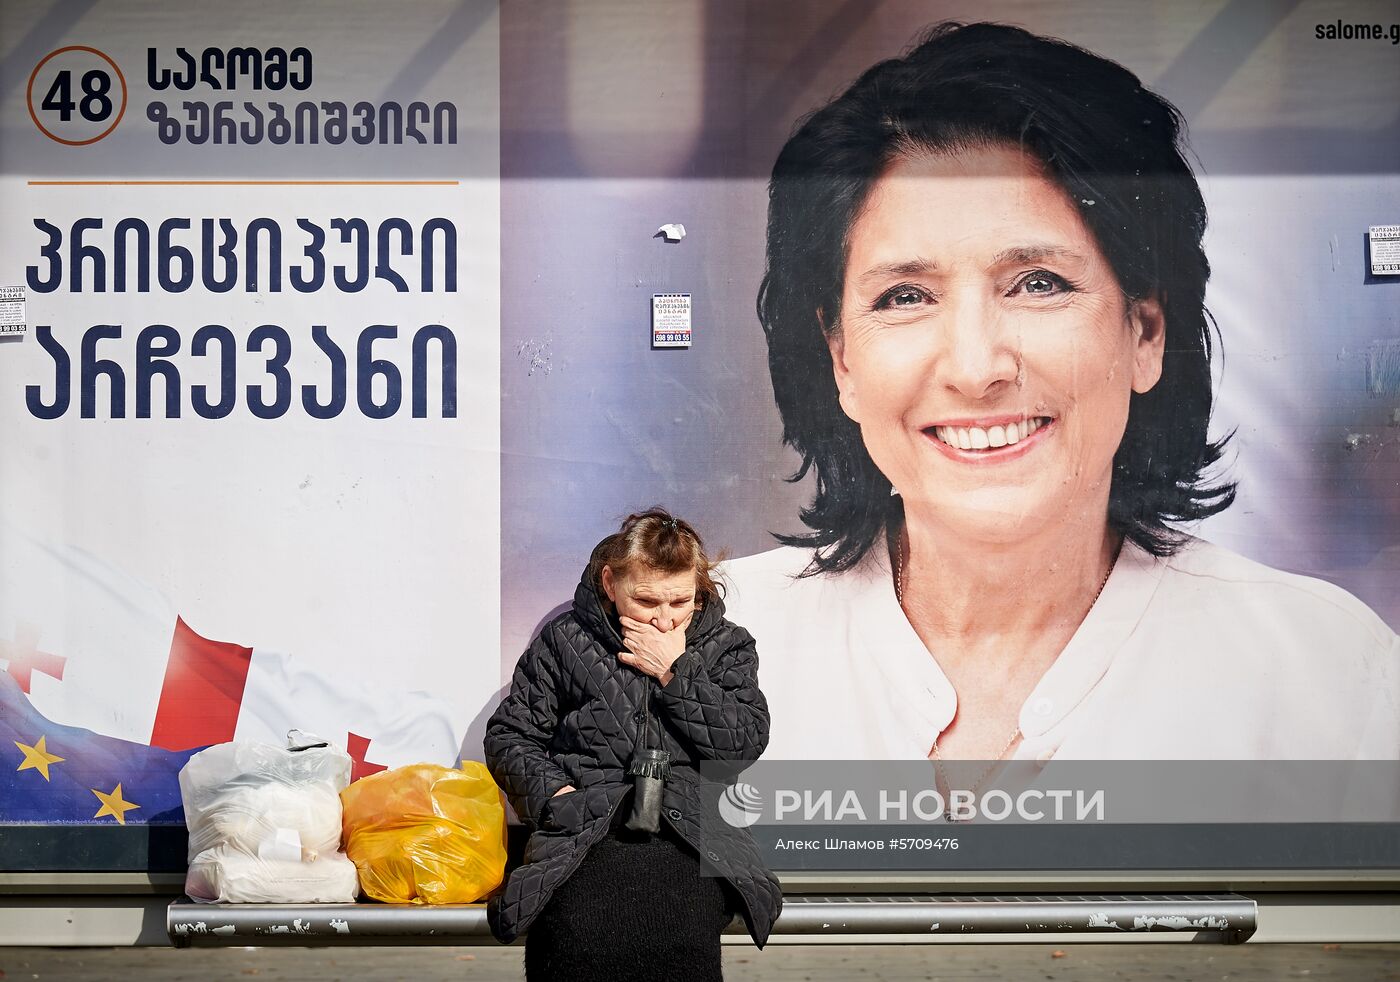  Предвыборная агитация на улицах Тбилиси